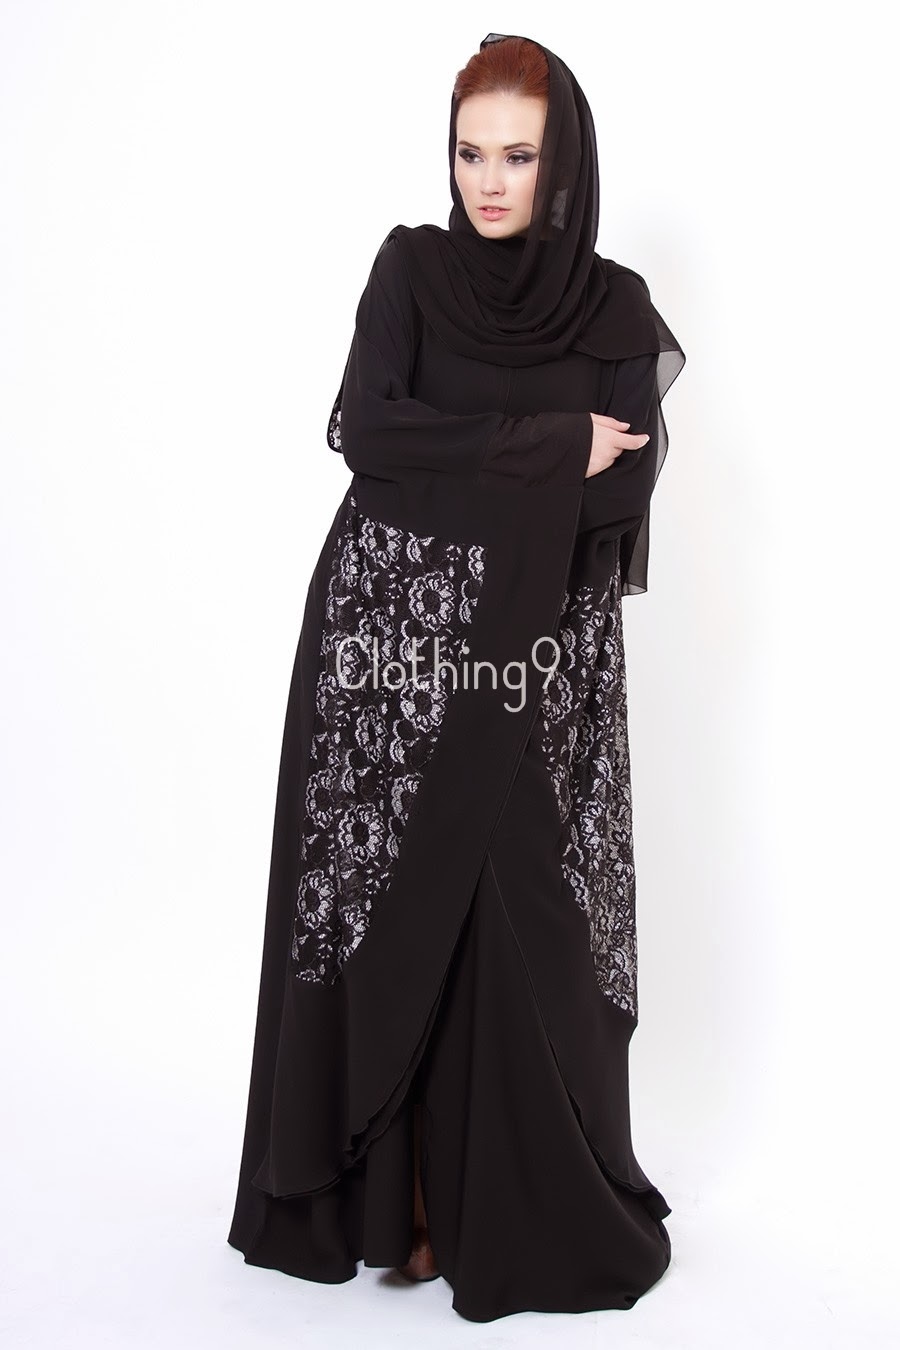 عبايات سوداء قمة الانوثة والاناقة والرشاقة والجمال للمحجبات Embroidered-abaya-designs-2014-dubai-12